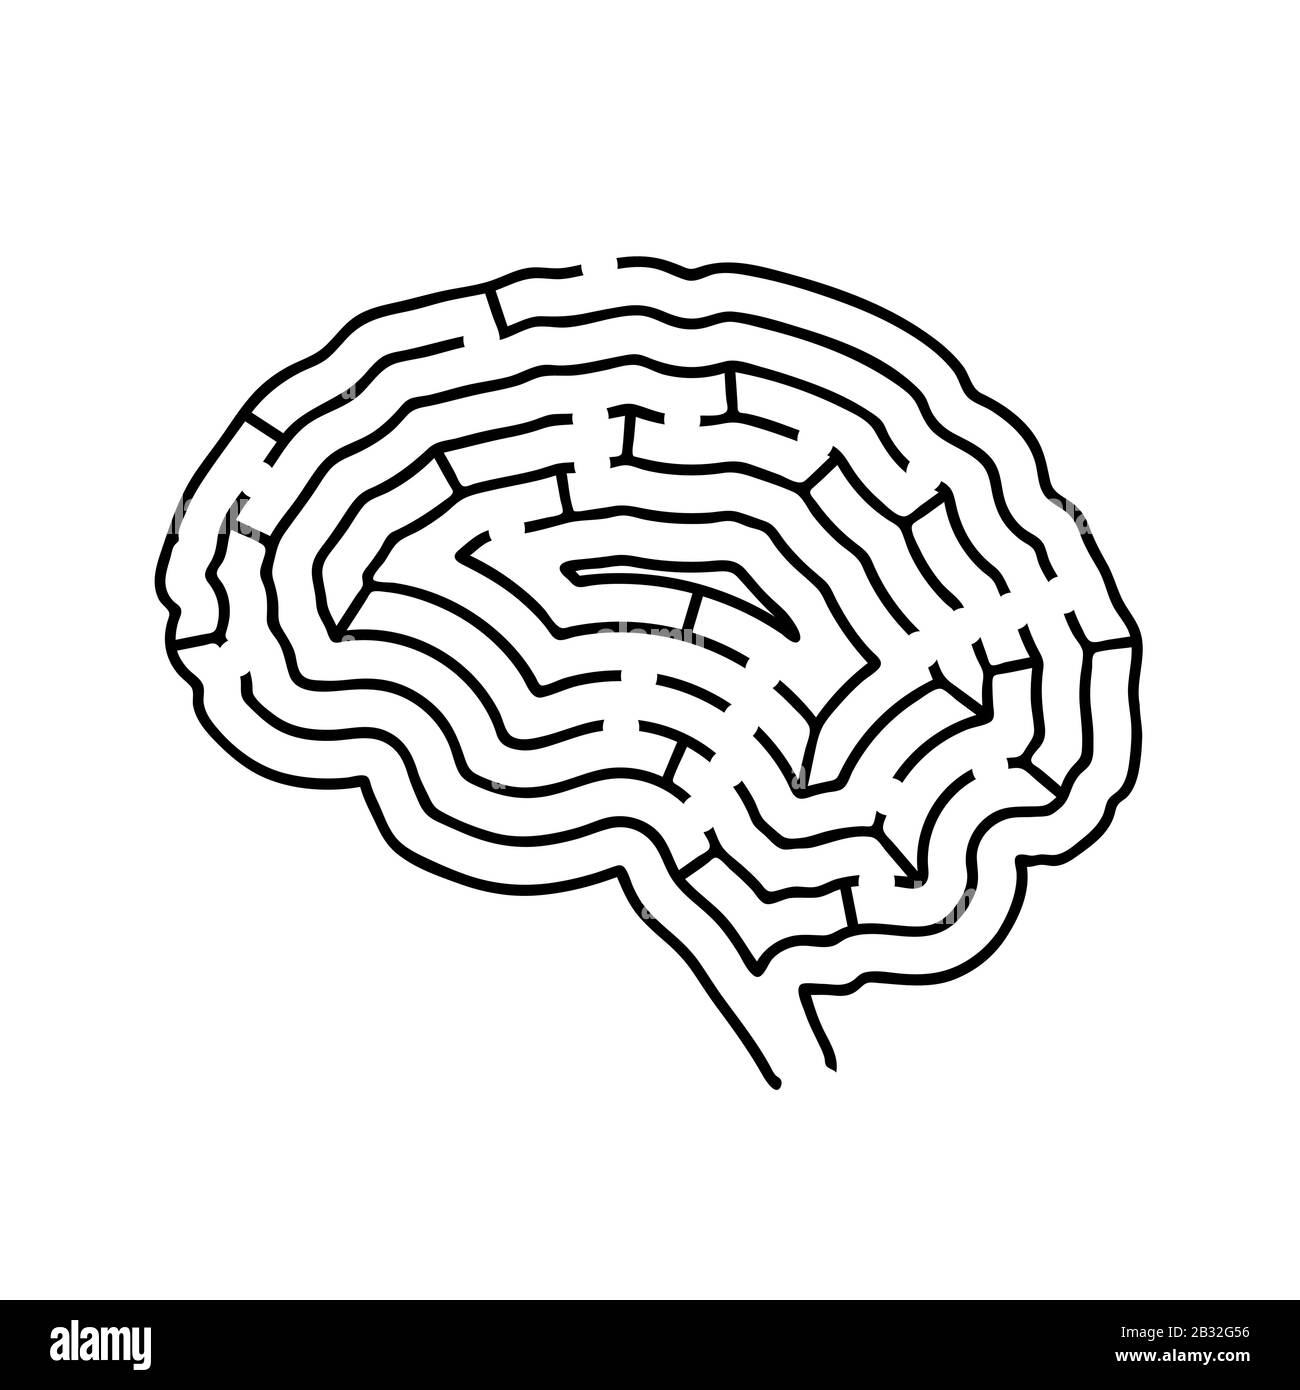 Gehirn geformtes Labyrinth, schwarze Silhouette auf weiß Stock Vektor